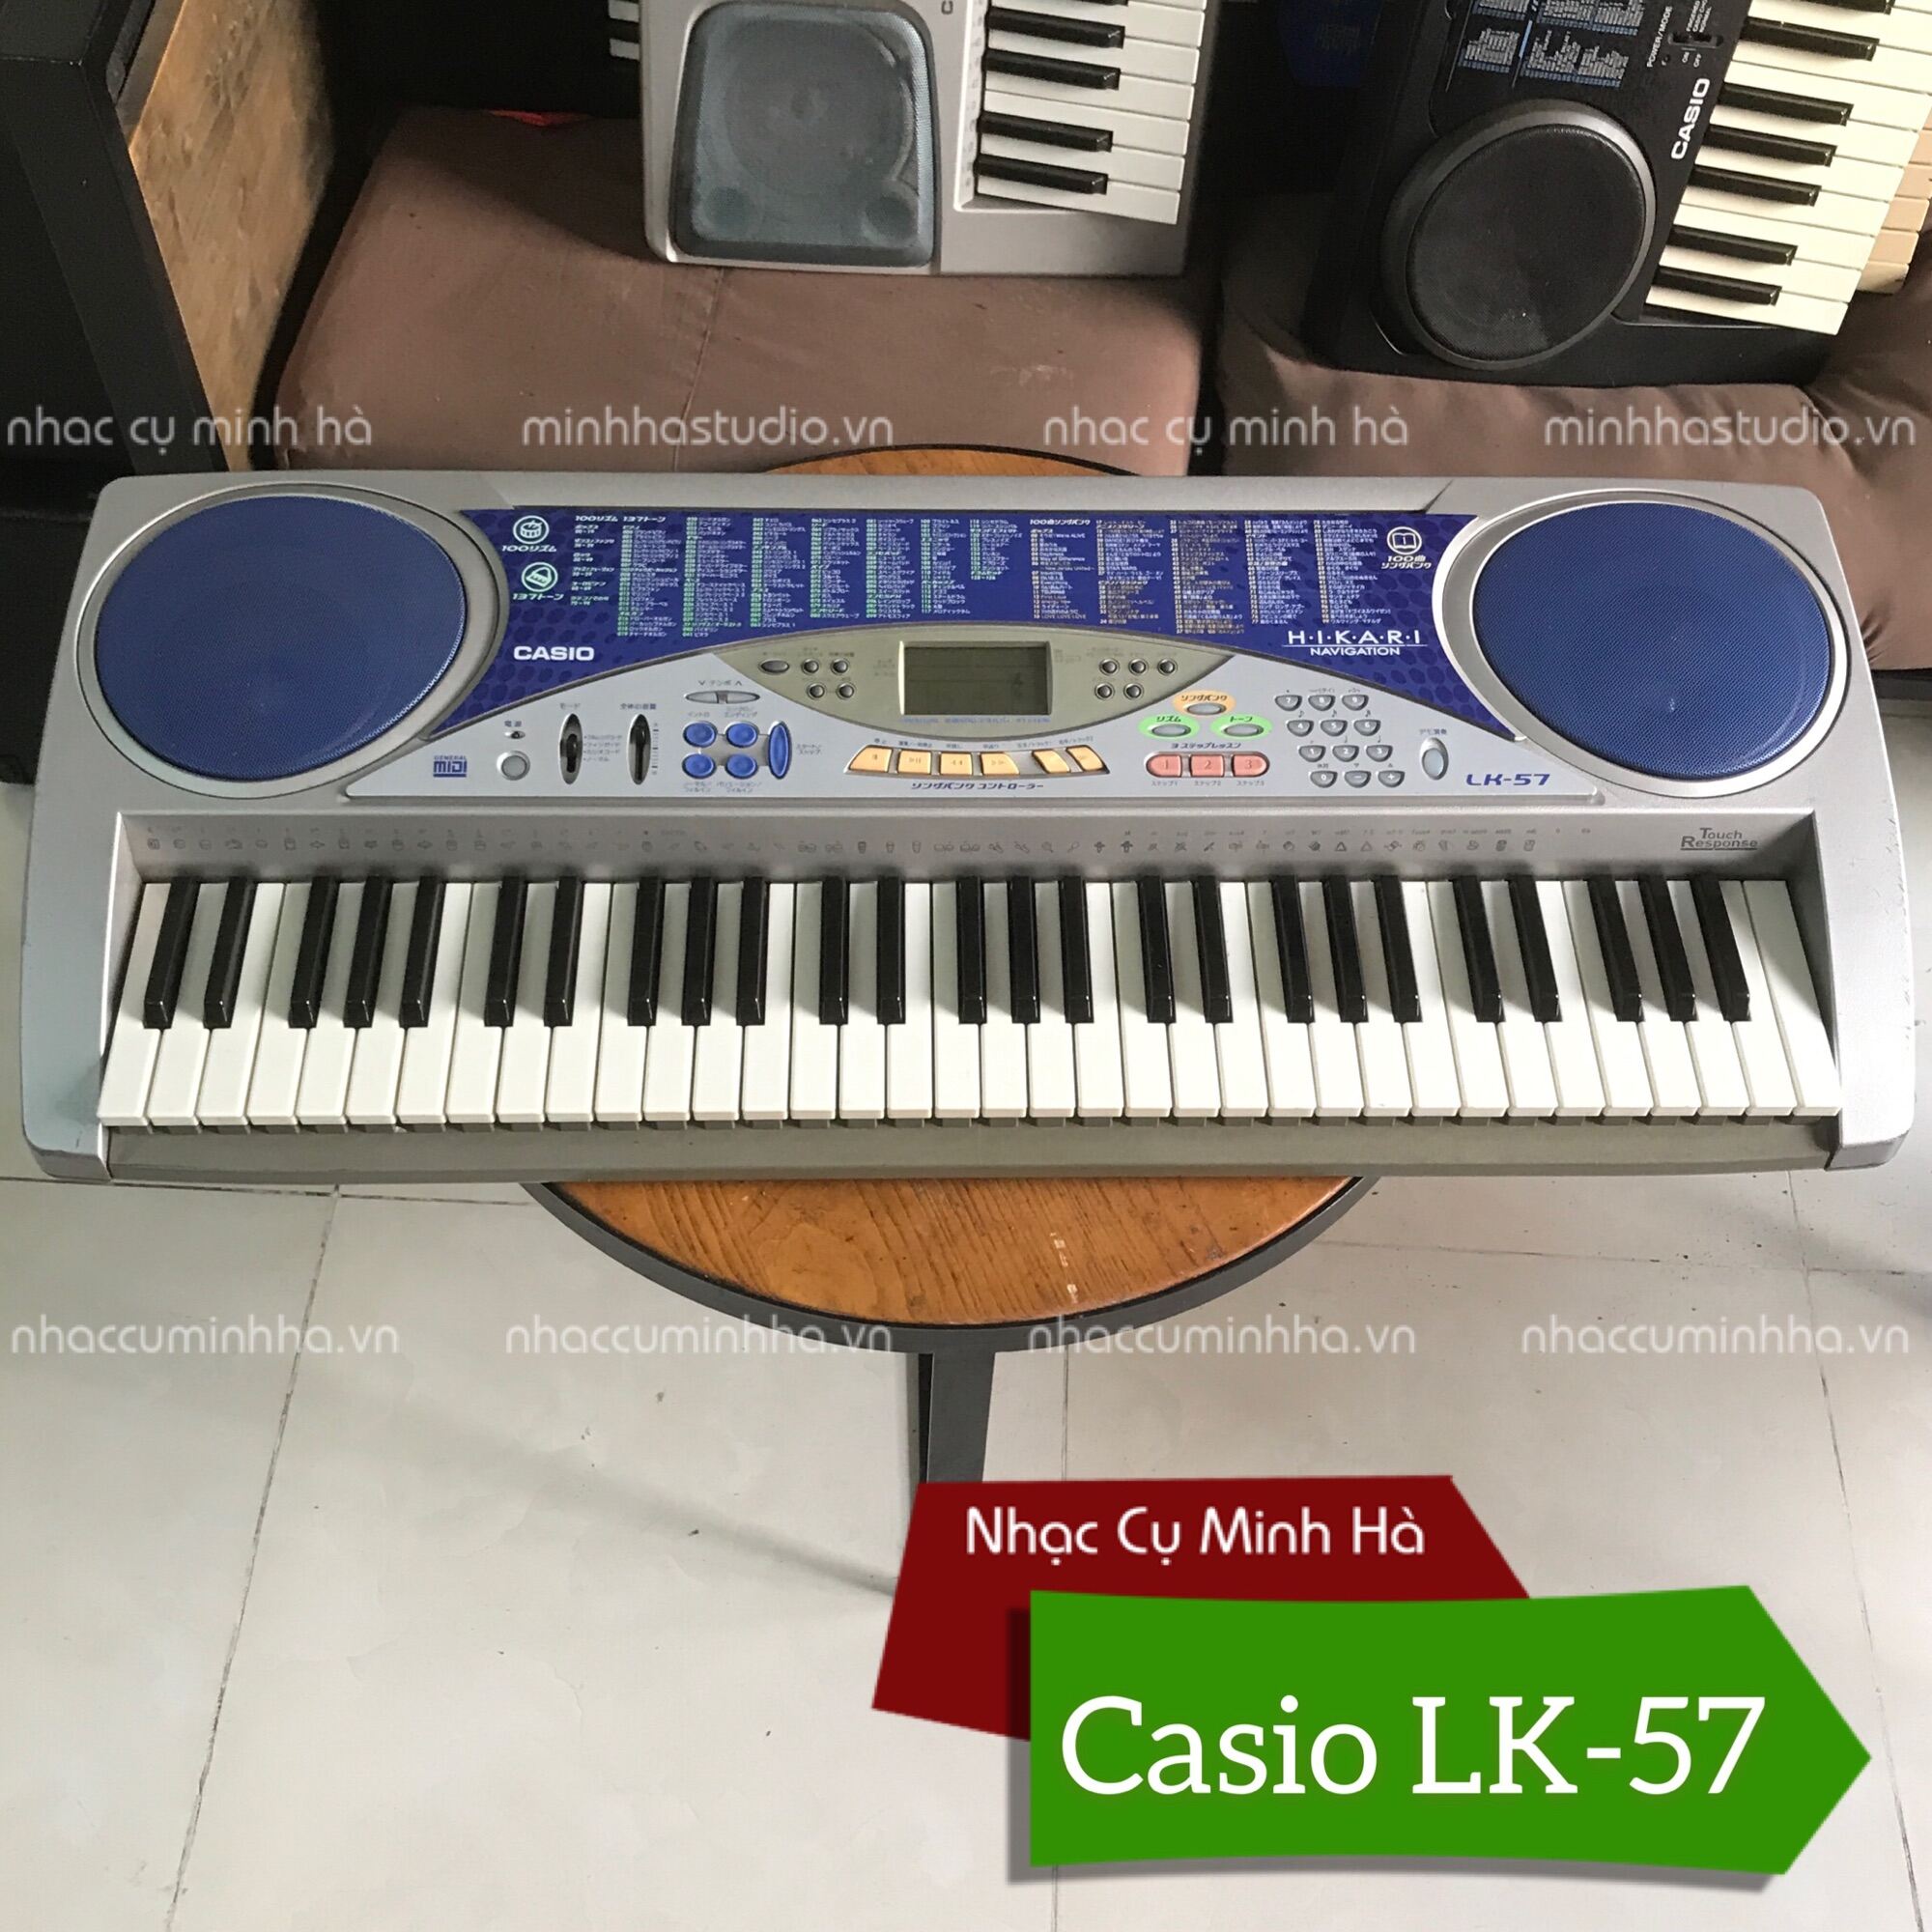 Đàn Organ Casio LK-57 cao cấp, 61 phím cảm ứng có đèn led, 137 tiếng, 110 điệu, 100 songbank